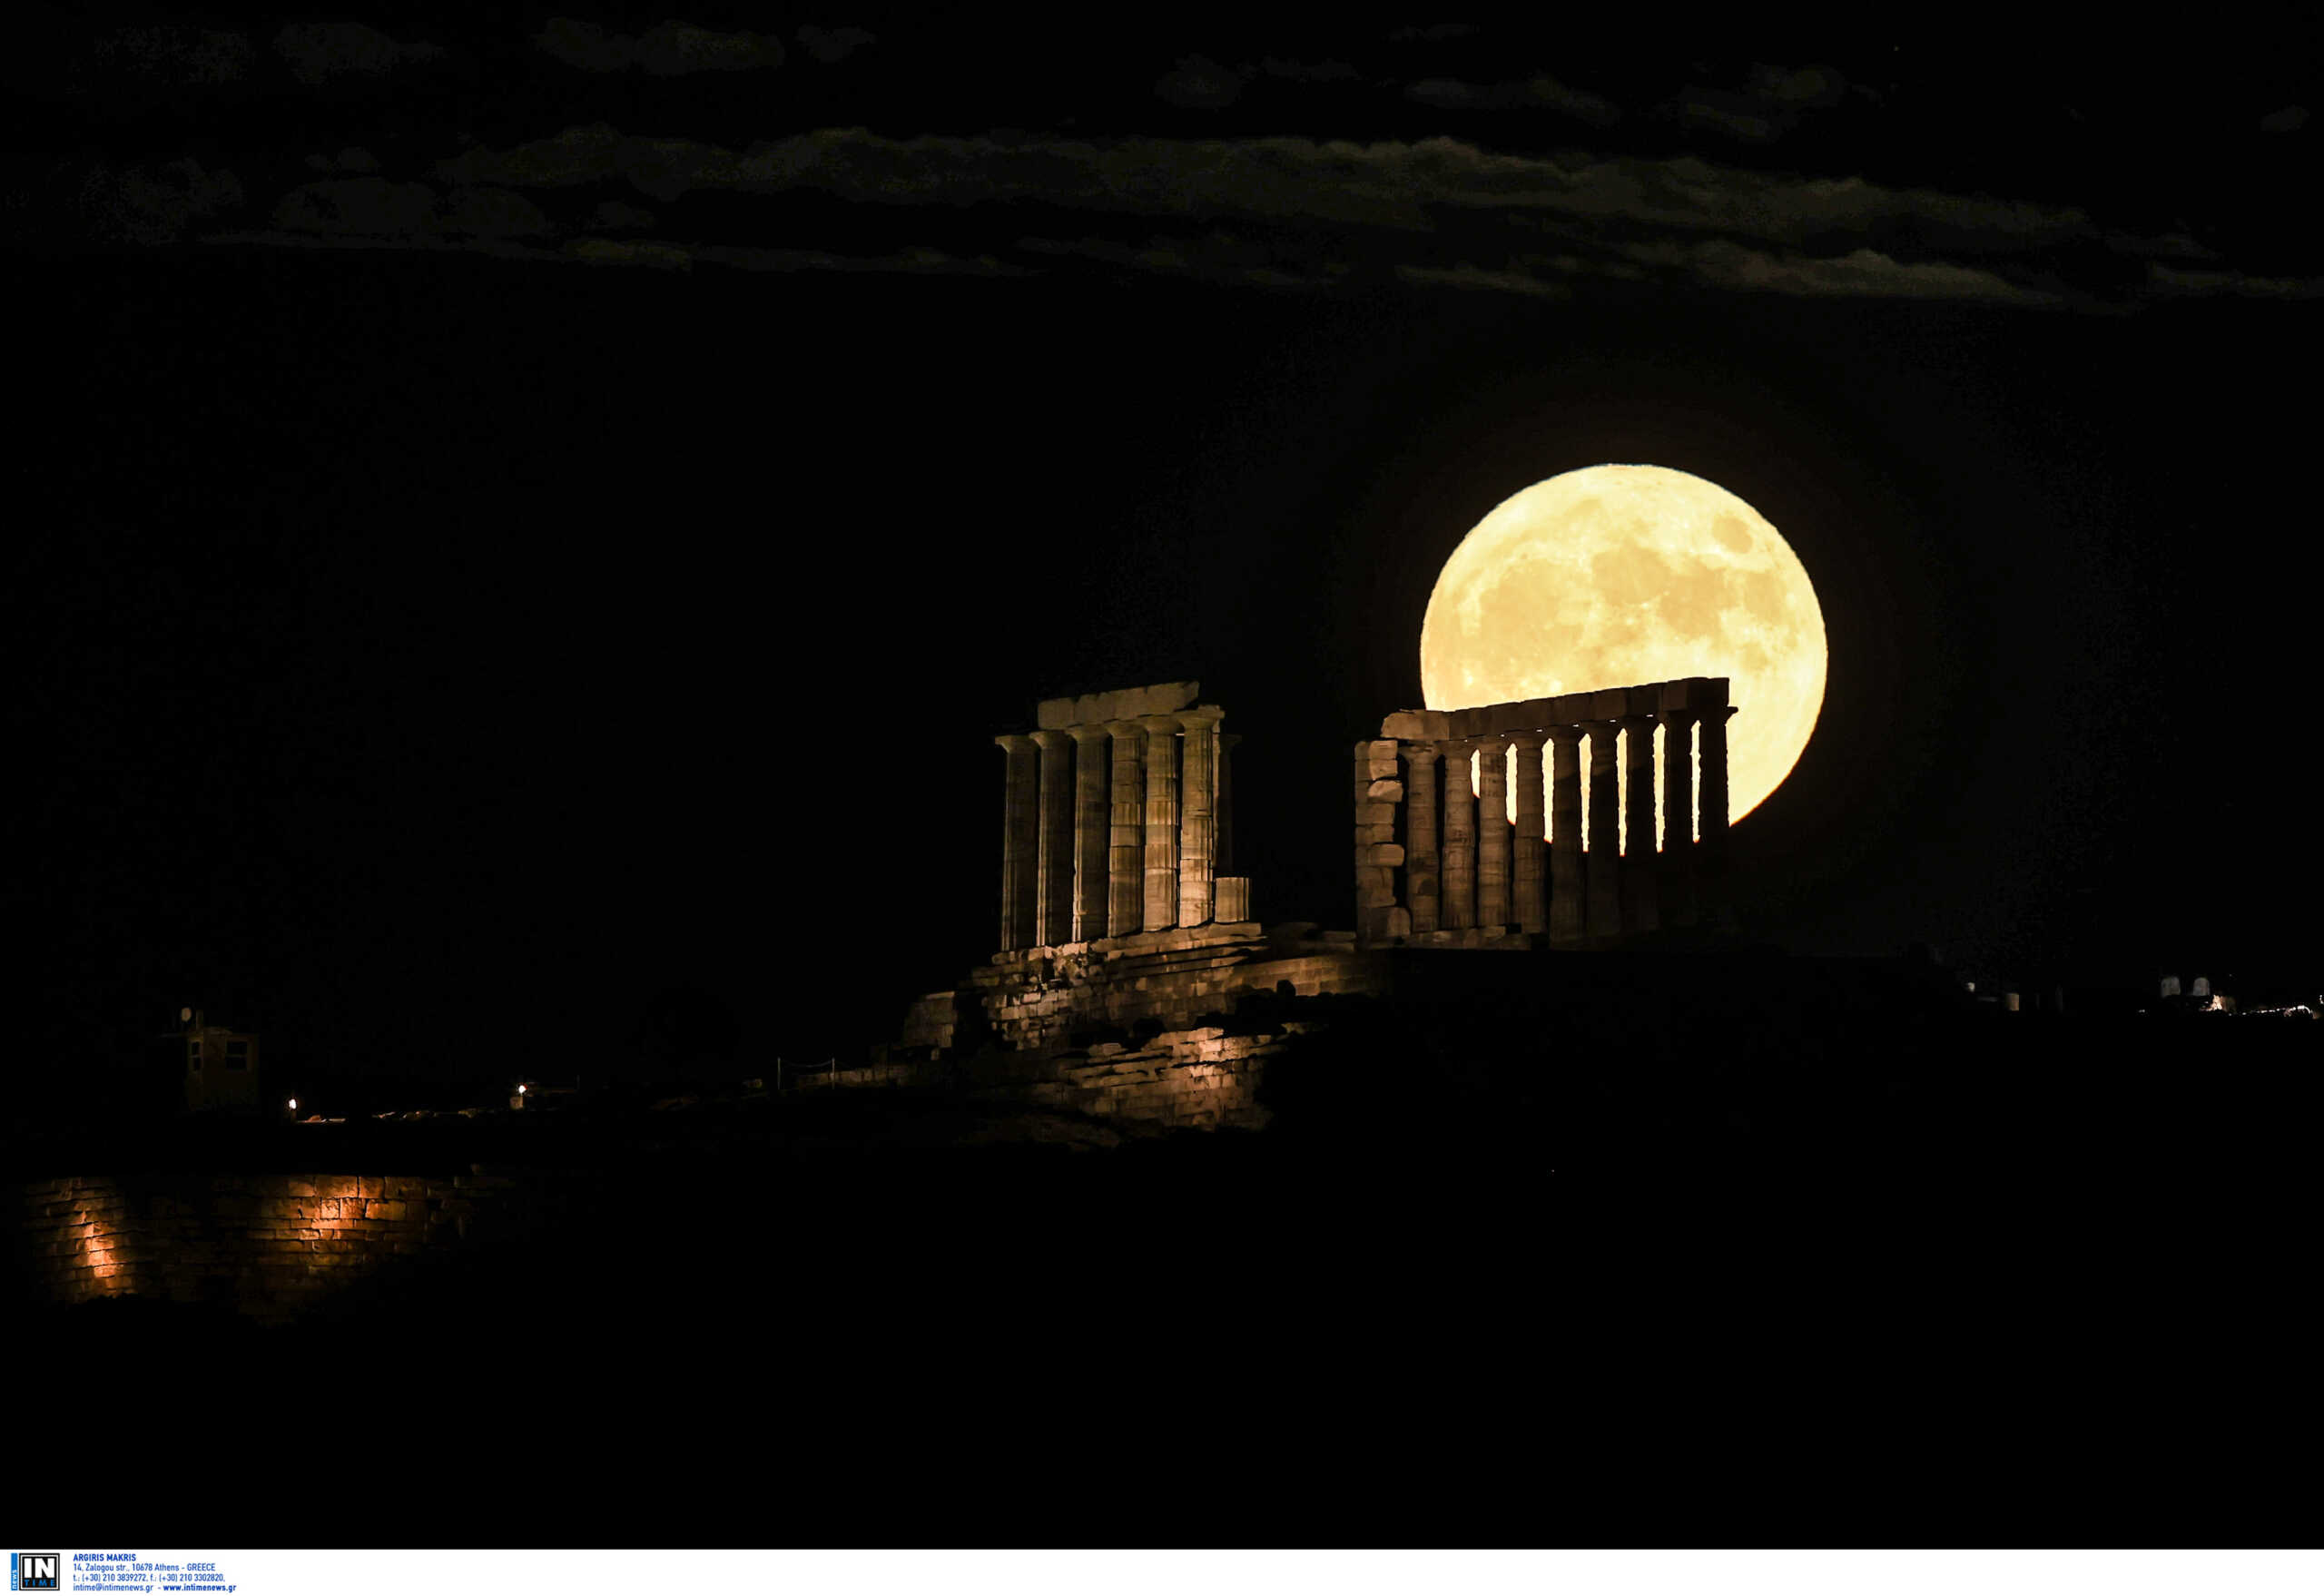 Αρχαιολογικοί χώροι, μνημεία και μουσεία όλης της χώρας γιορτάζουν το αυγουστιάτικο φεγγάρι